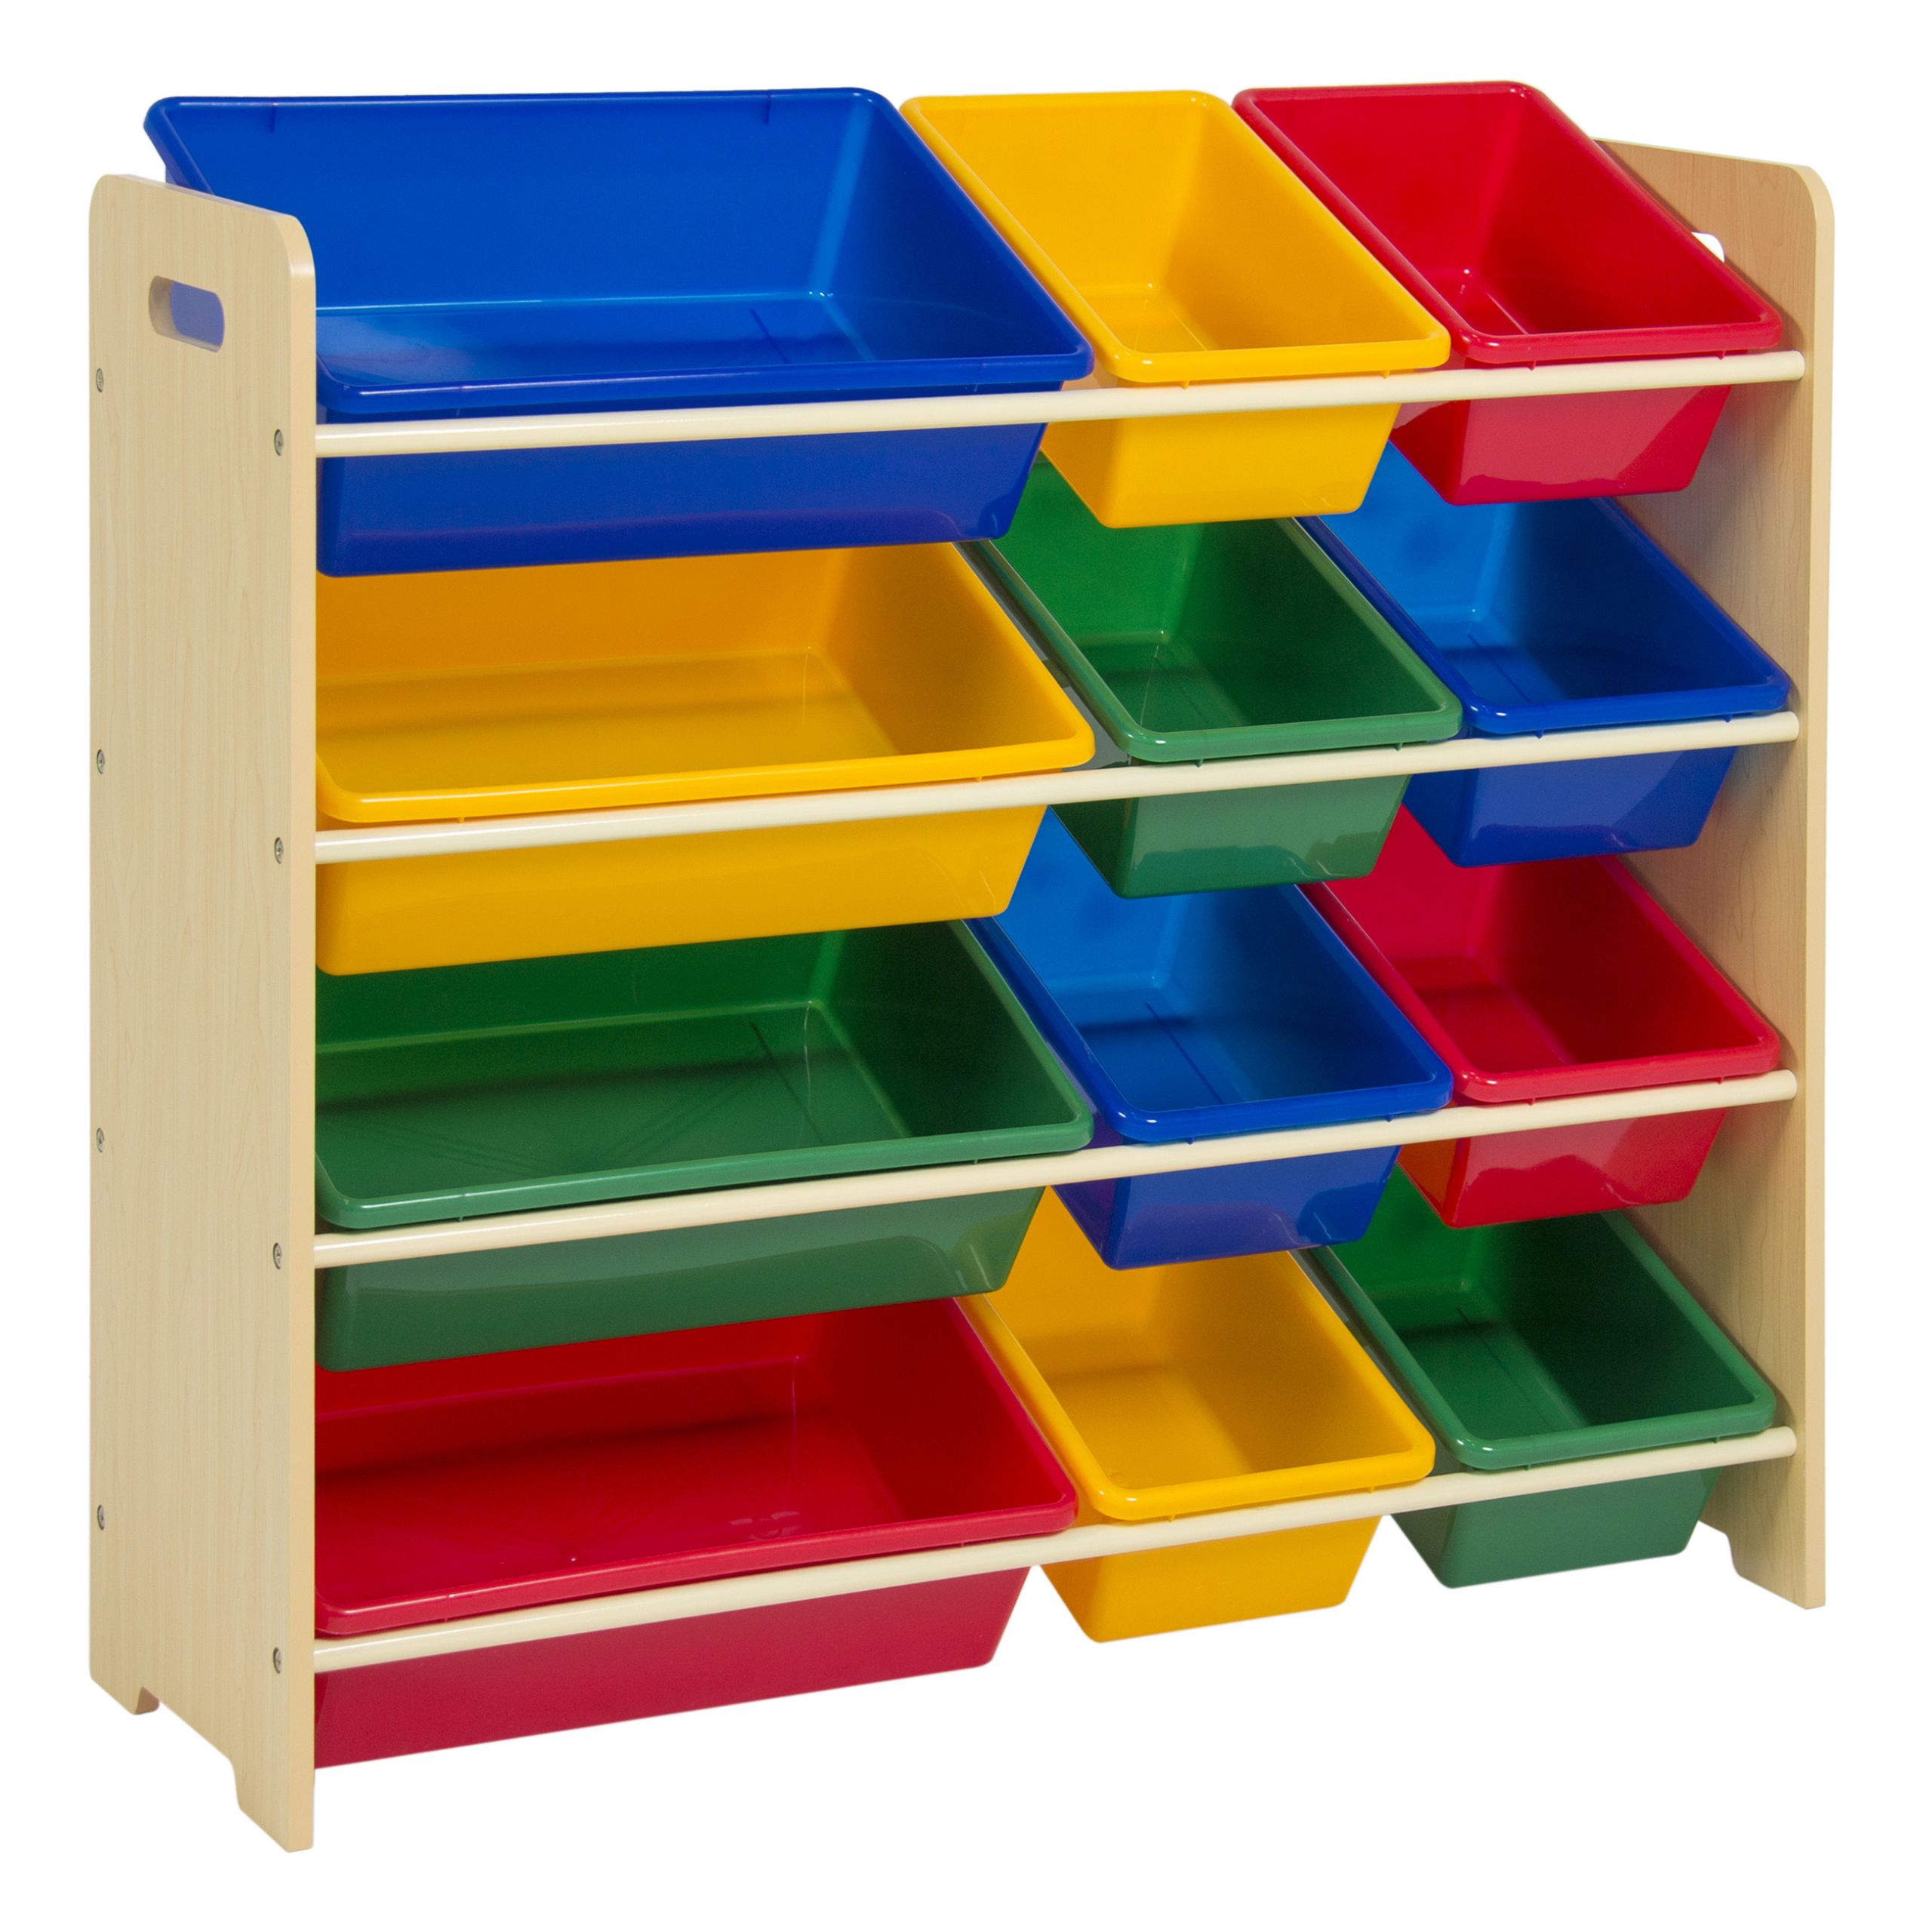 Child Storage Bins
 Toy Bin Organizer Kids Childrens Storage Box Playroom